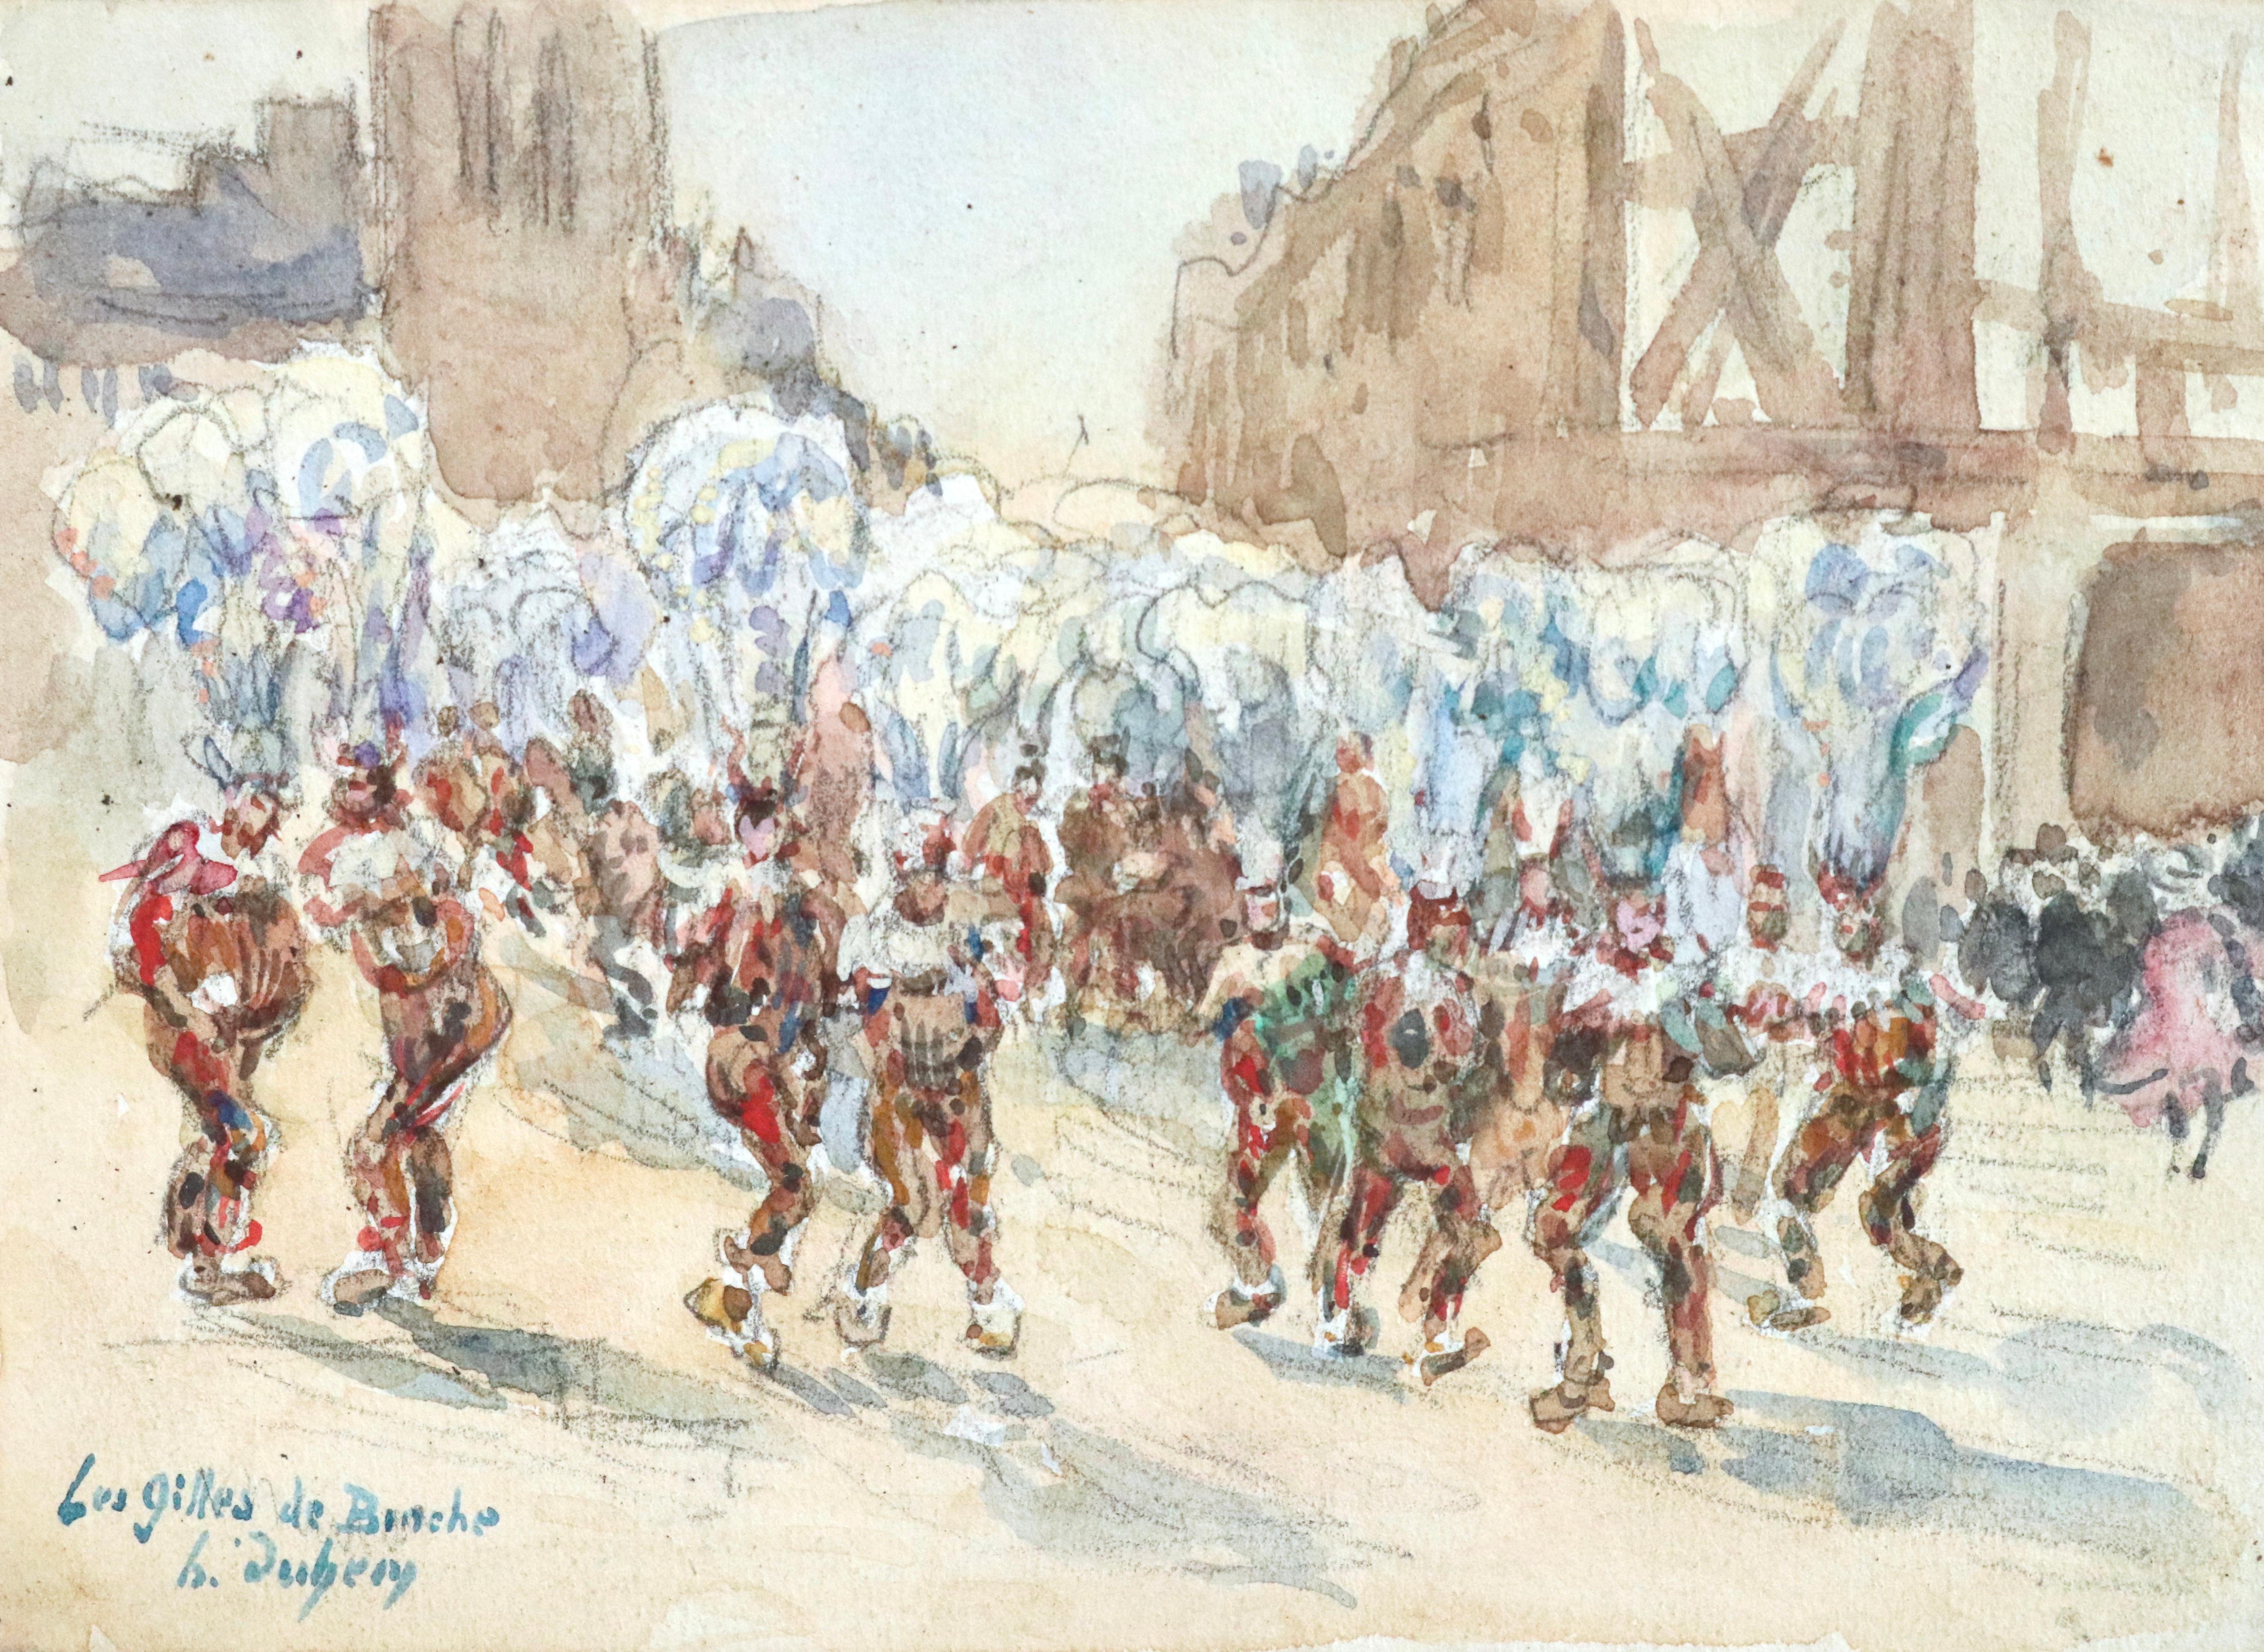 Figurative Painting Henri Duhem - Les Gilles de Binche - Aquarelle du XIXe siècle, figures du carnaval belge H Duhem